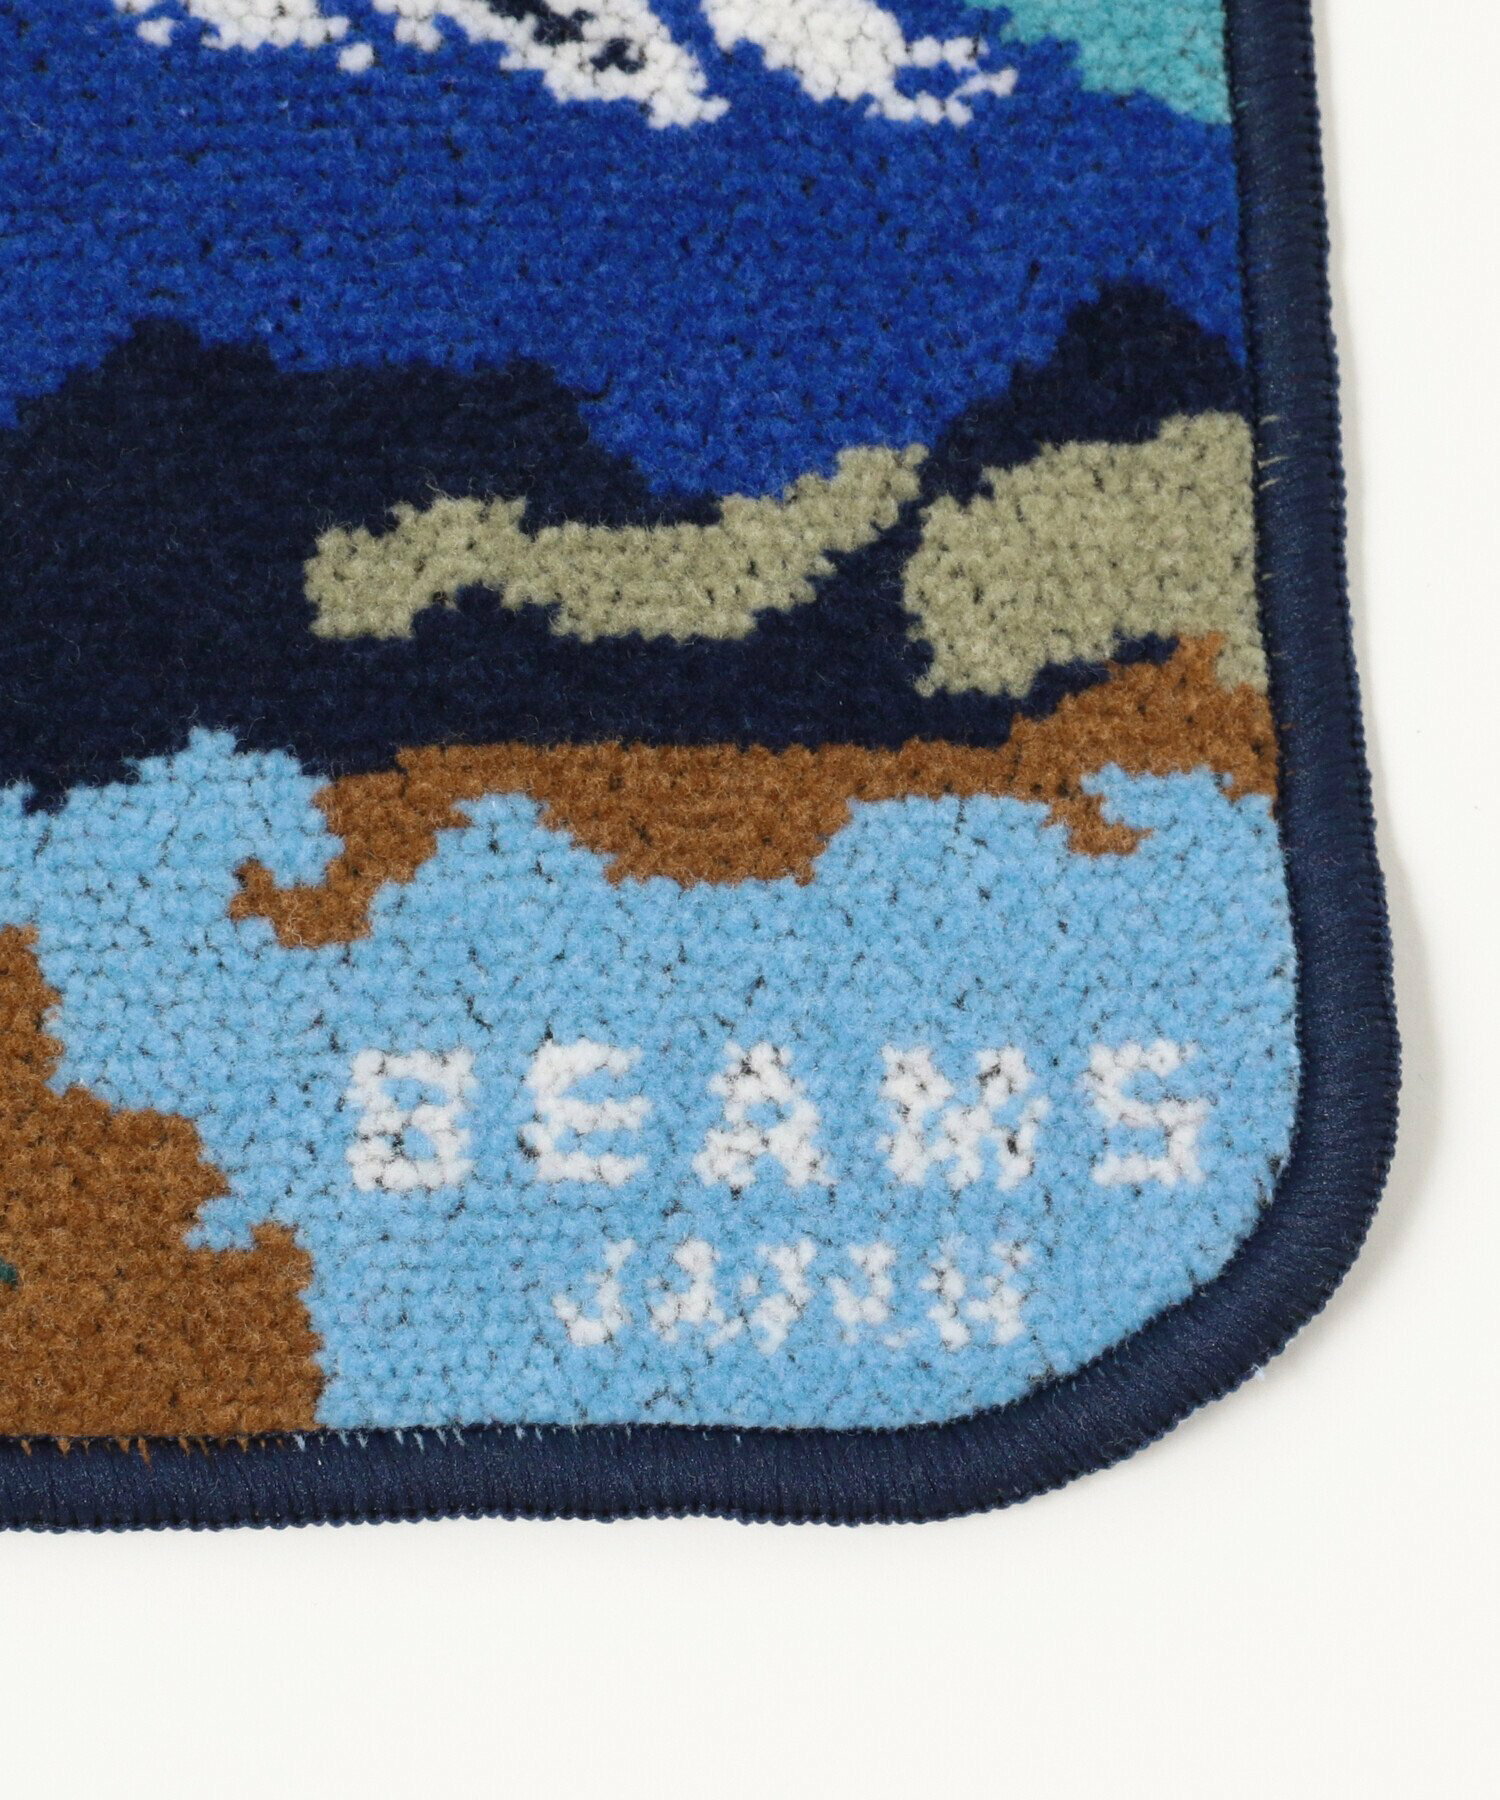 BEAMS JAPAN / 別注 富士山 シェニール織 ハンカチ タオル